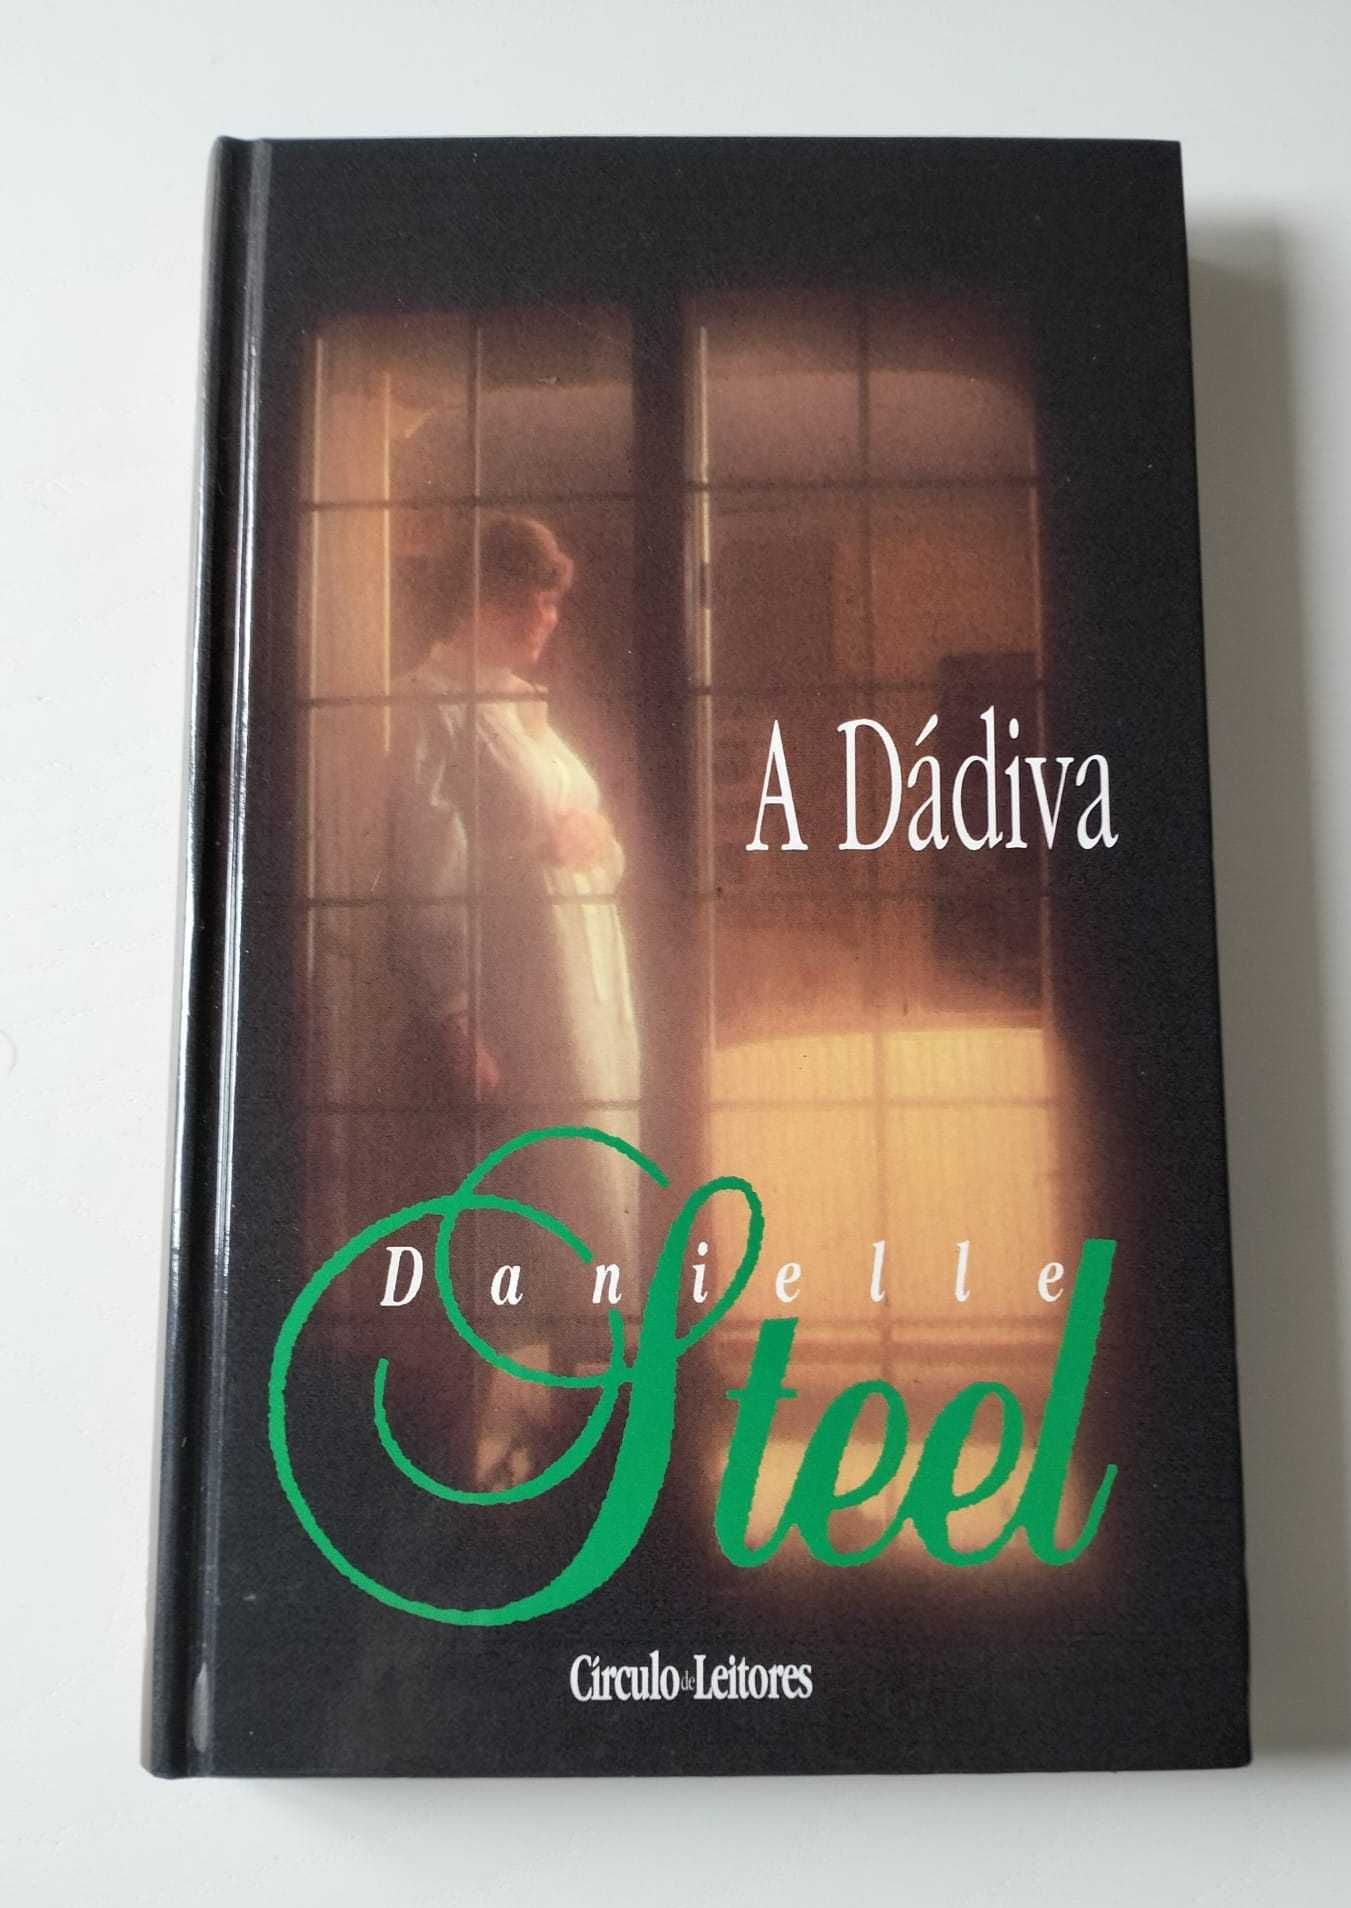 Livro "A Dádiva" - Danielle Steel